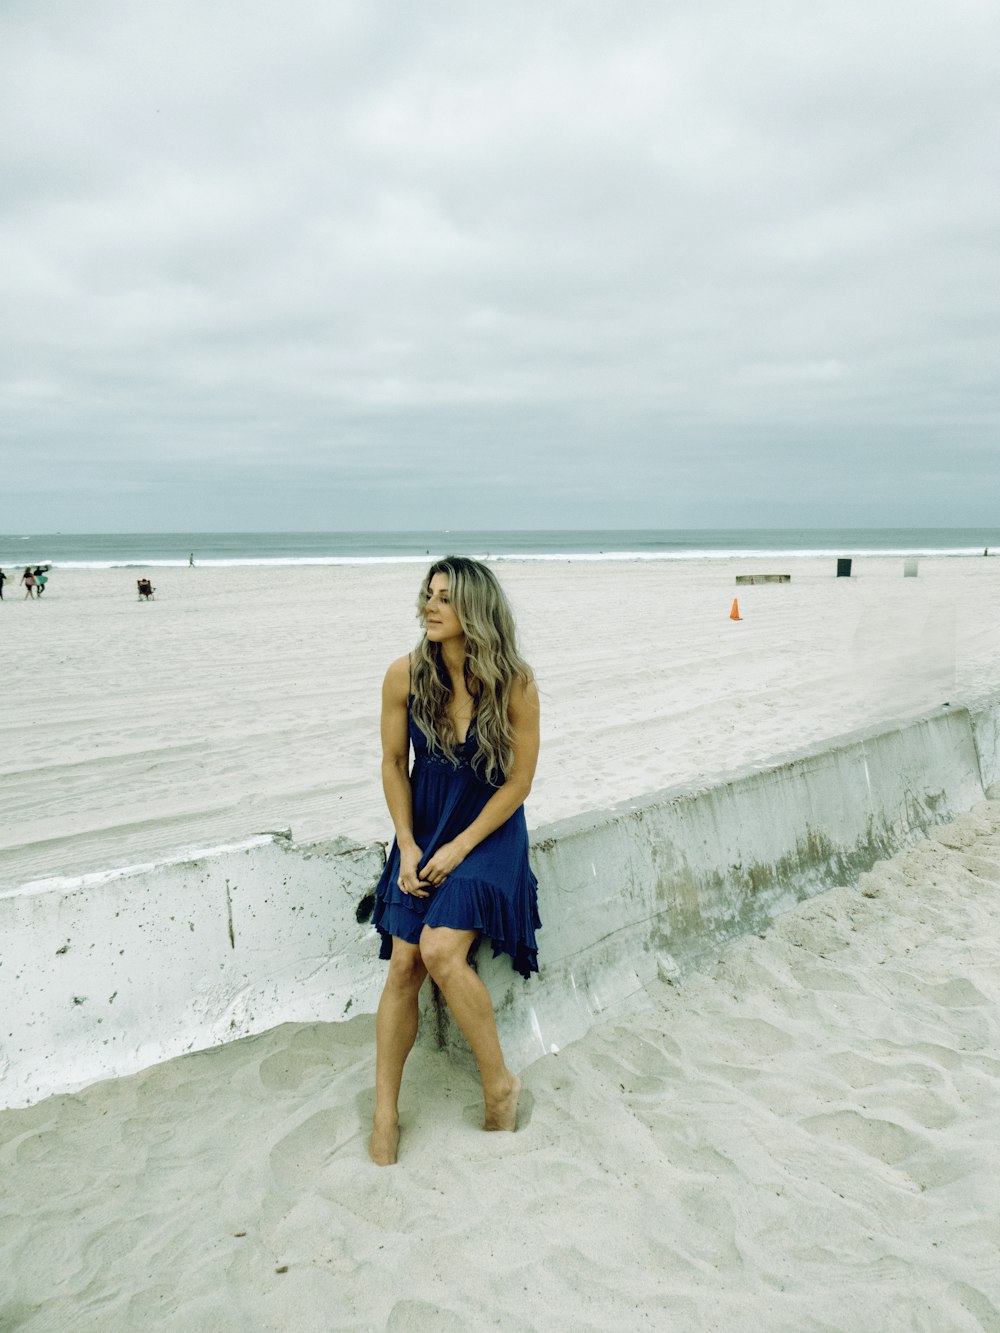 파란 드레스를 입은 여자가 해변 벽에 앉아 있다